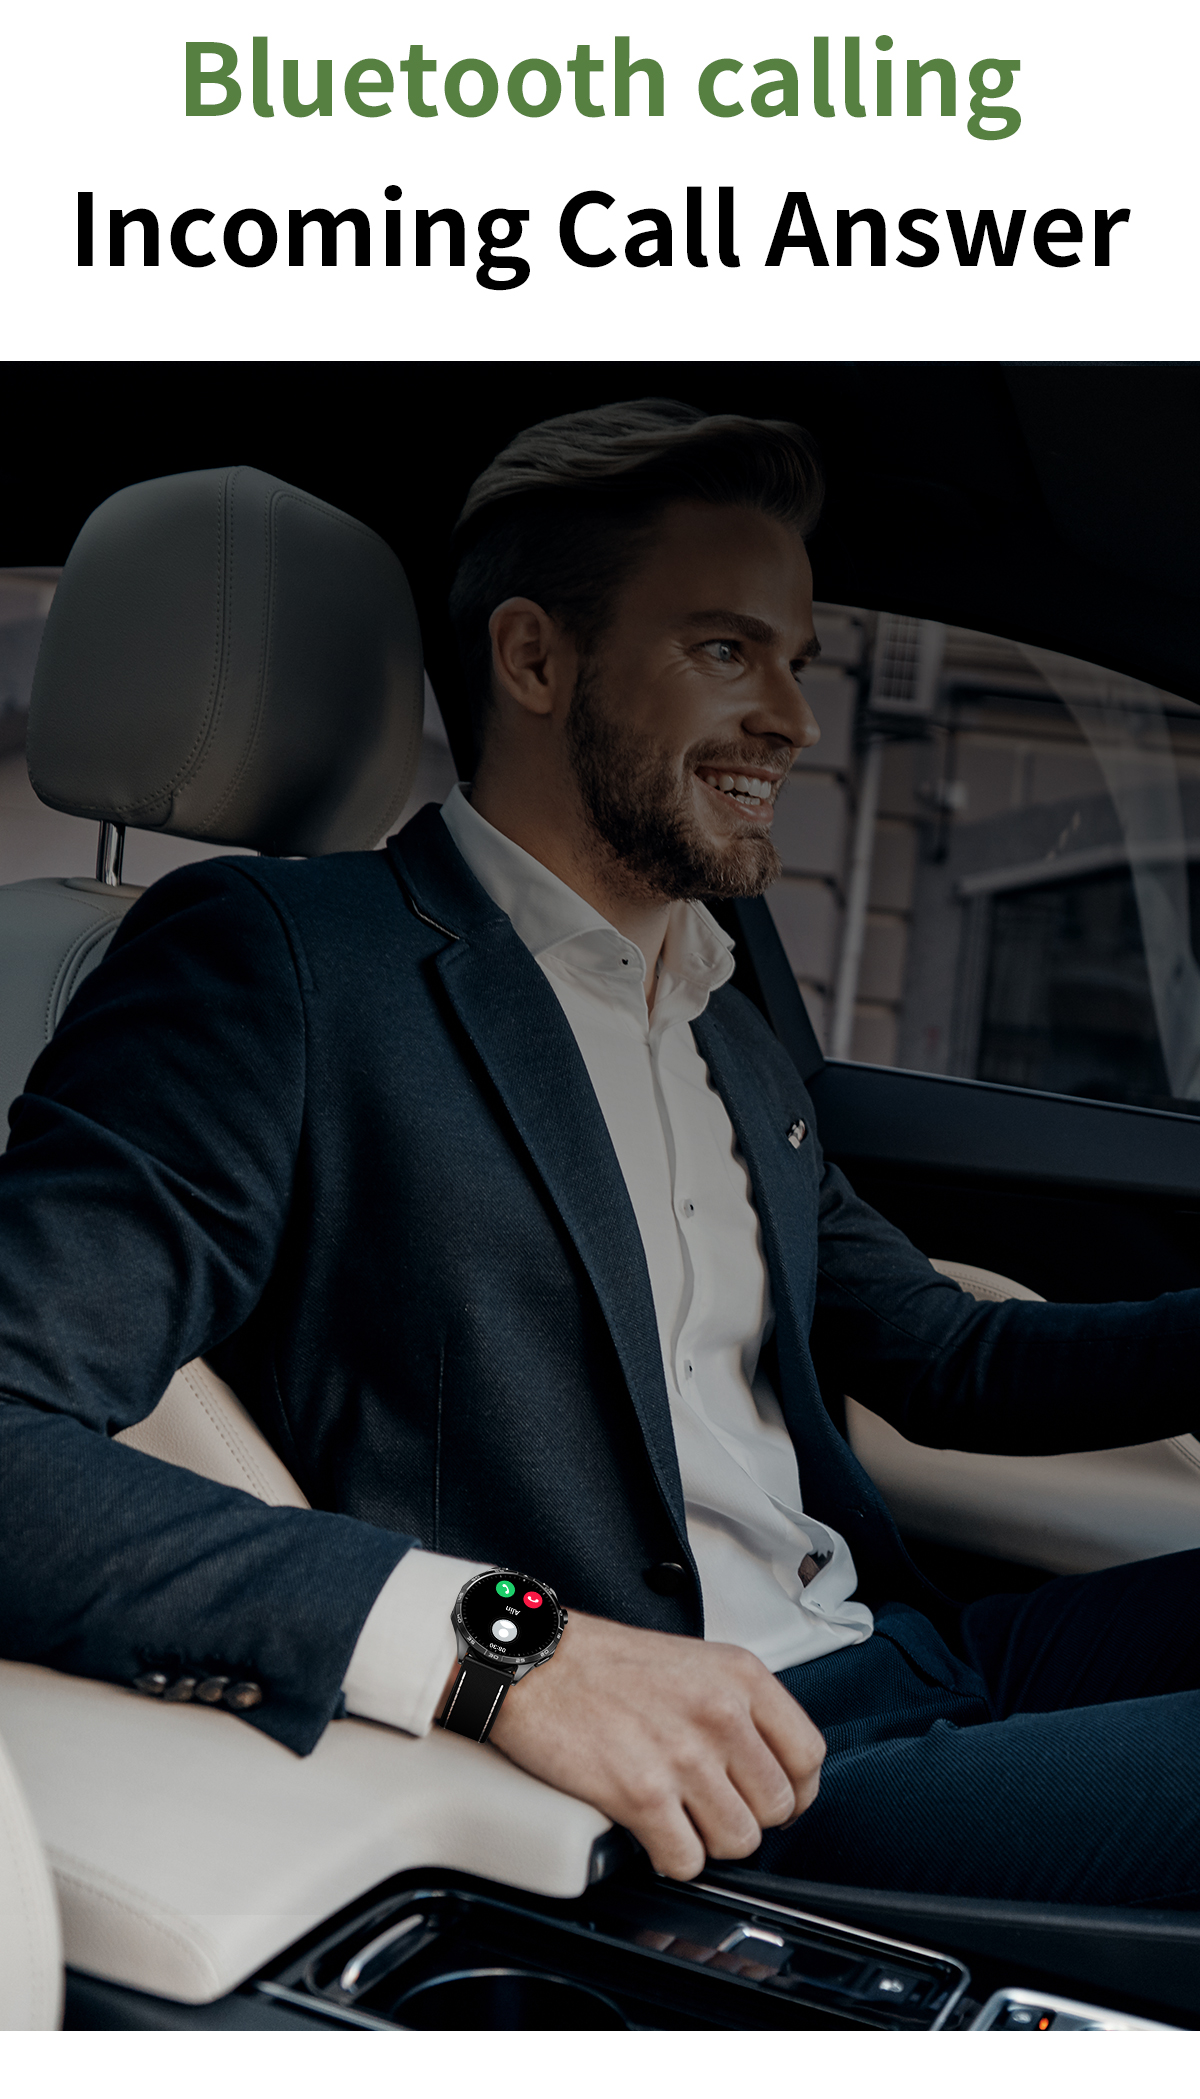 MIRUX FAMOGT4-SW BT-Anruf Fitness Tracker NFC Schwarz Silikon, Smartwatch